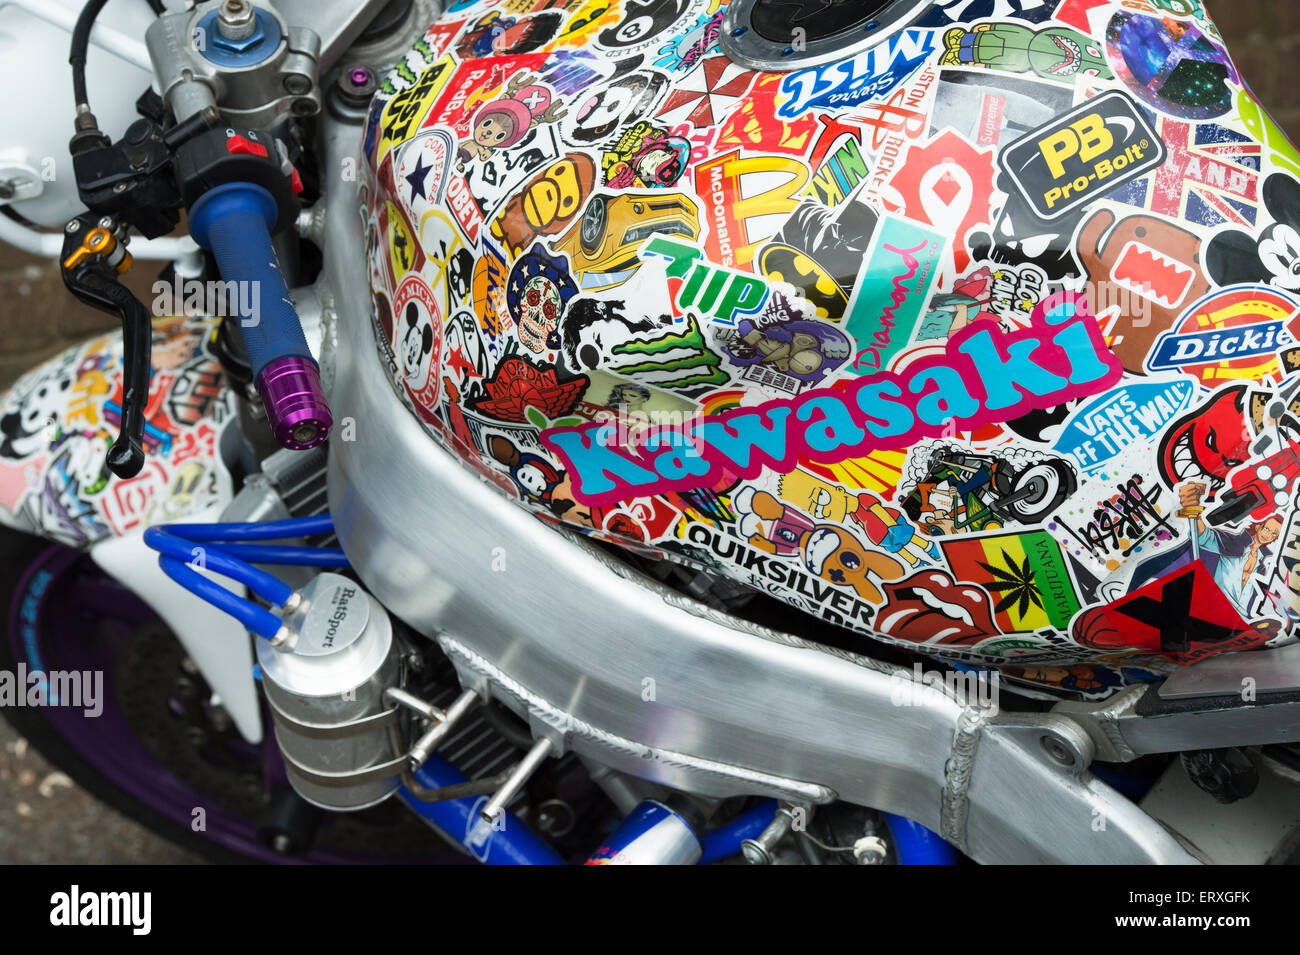 sticker décoration moto GP